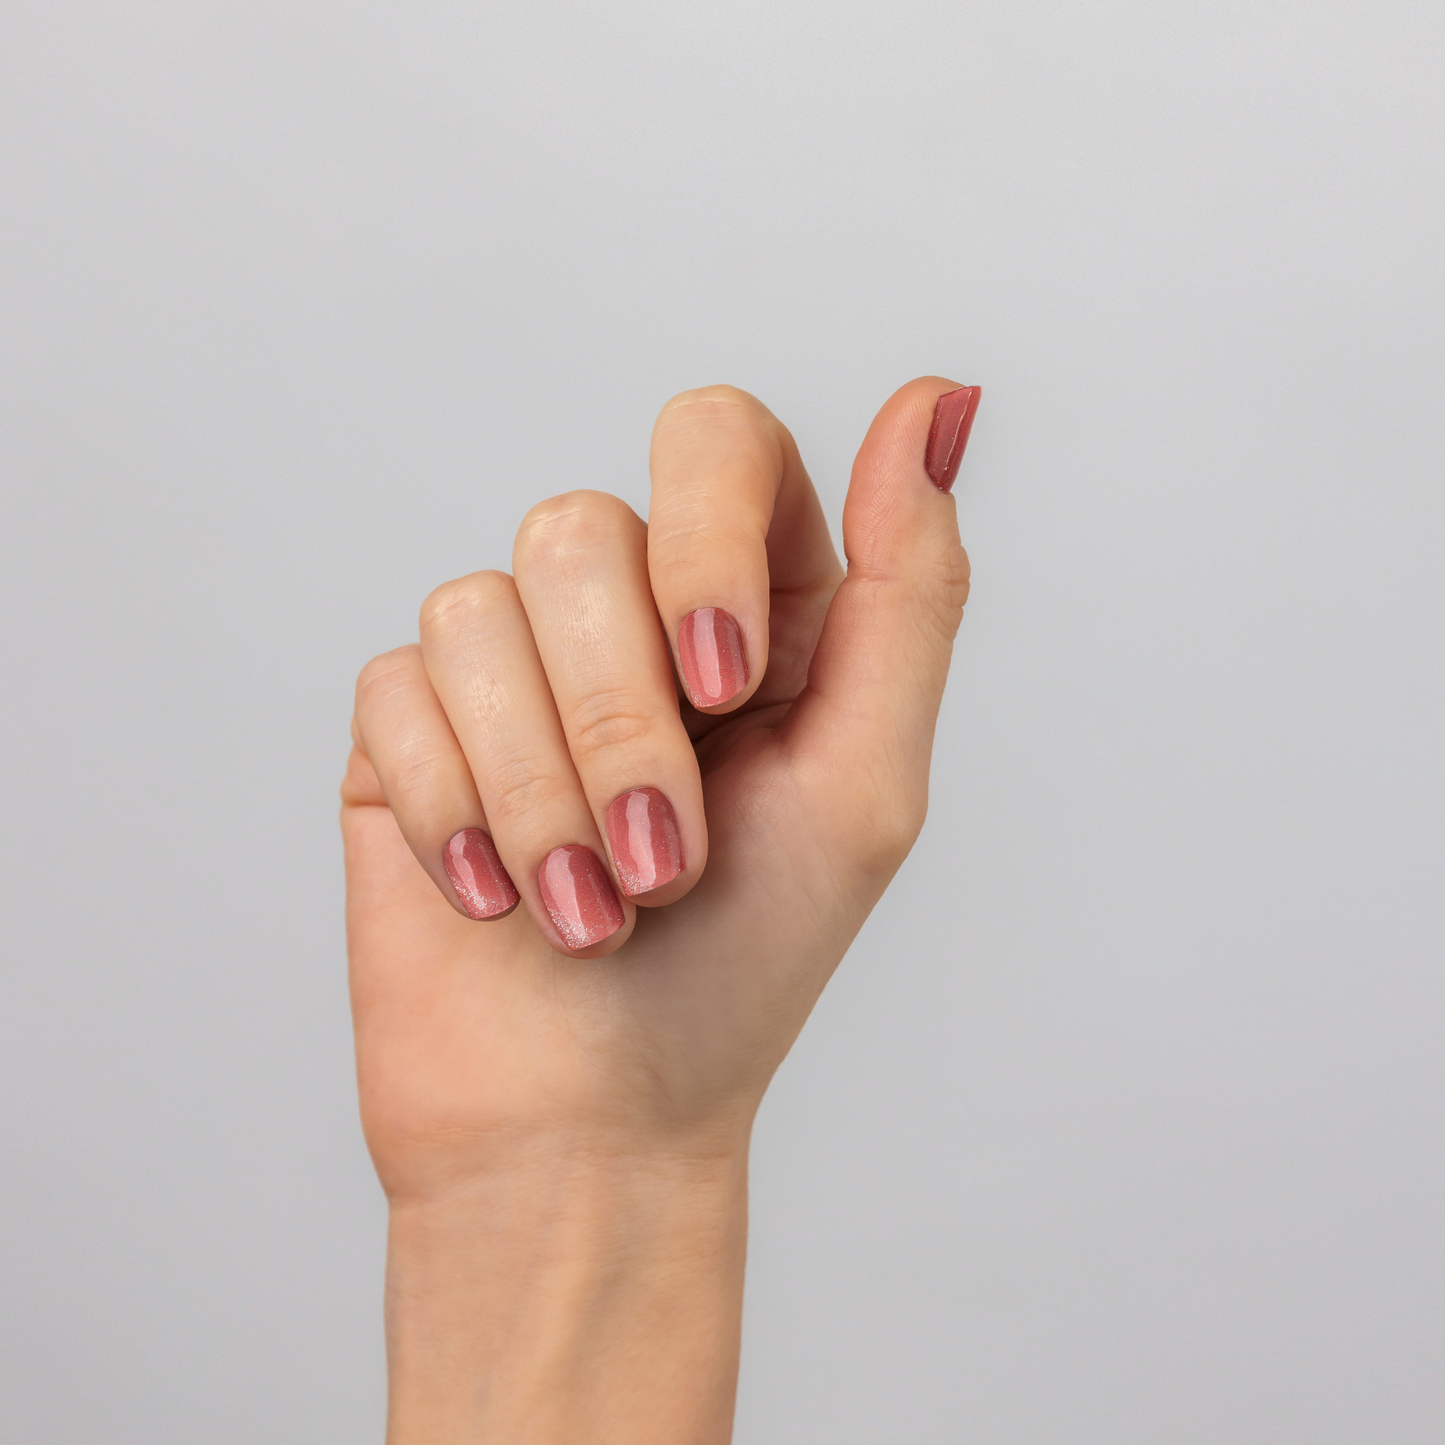 SILVERY KAHALA - NAILOG semi cured nail strip